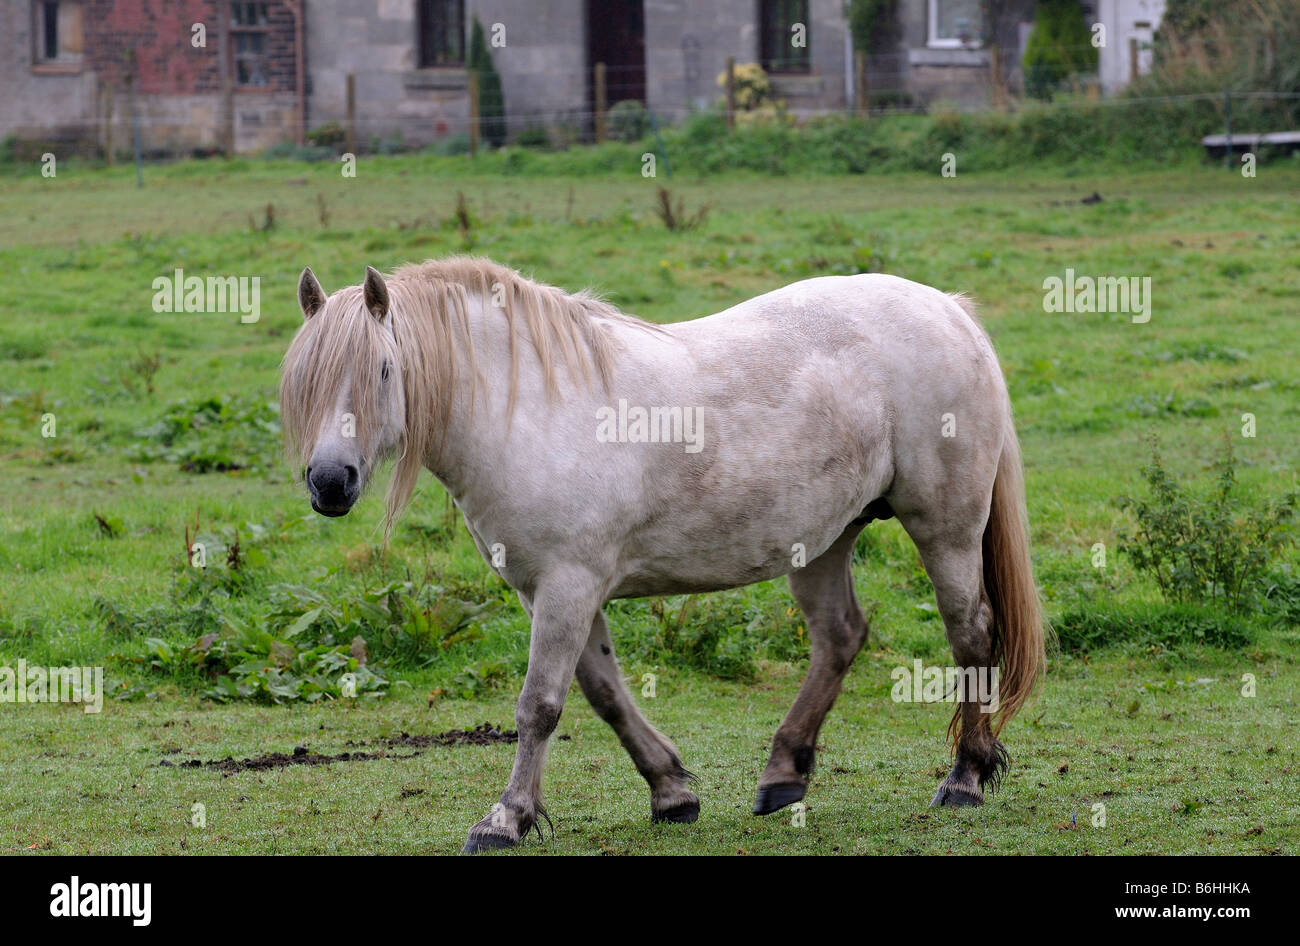 Un bel cavallo bianco stallone, bella mane staring curiosamente e che lentamente trot galoppa oltre, rivelando la sua intelligenza Foto Stock